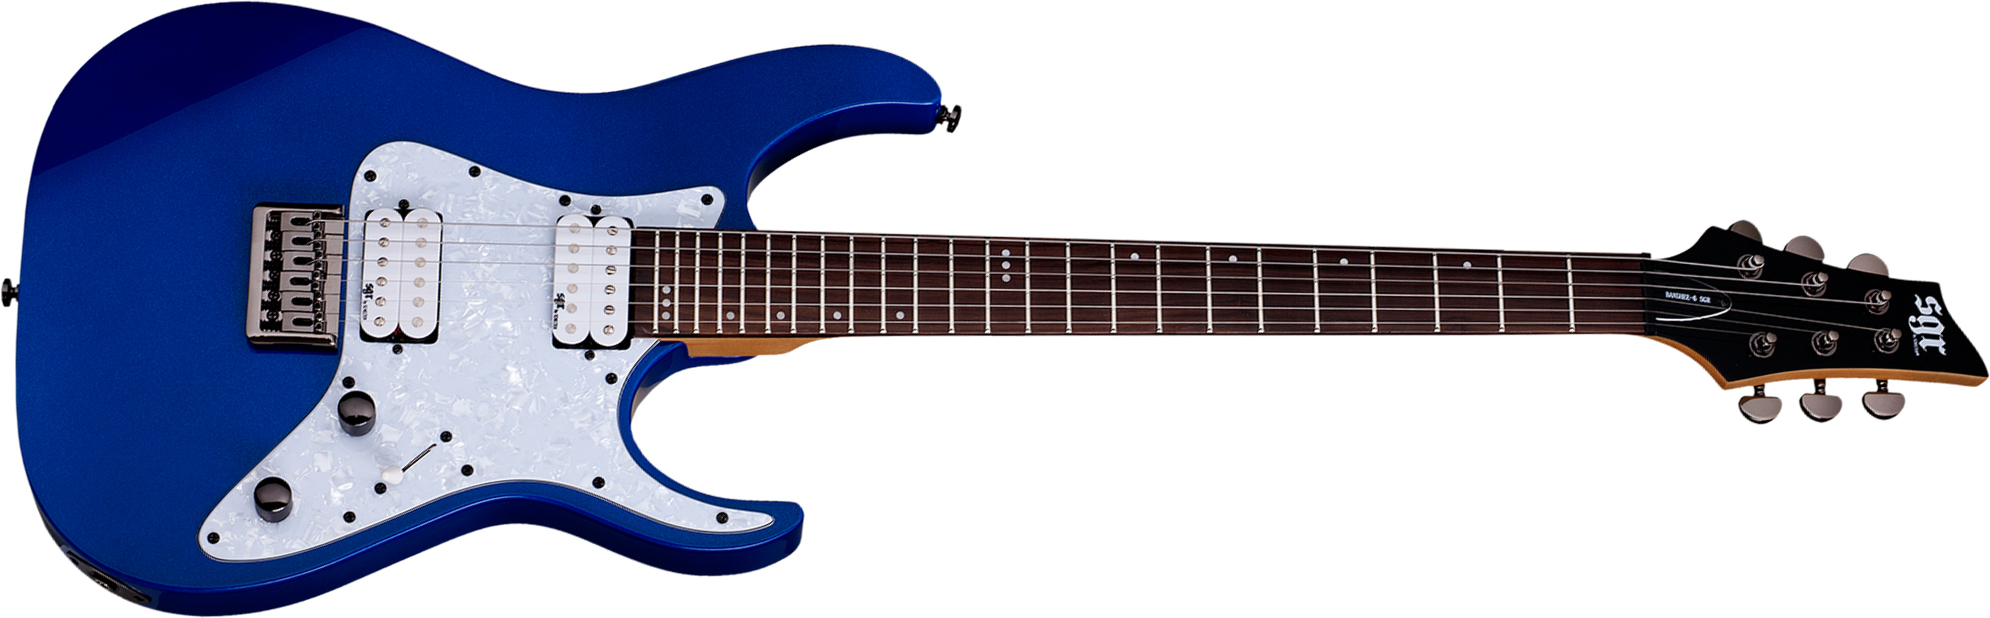 Schecter Banshee 6 Sgr 2h Ht Rw - Electric Blue - Str shape electric guitar - Main picture